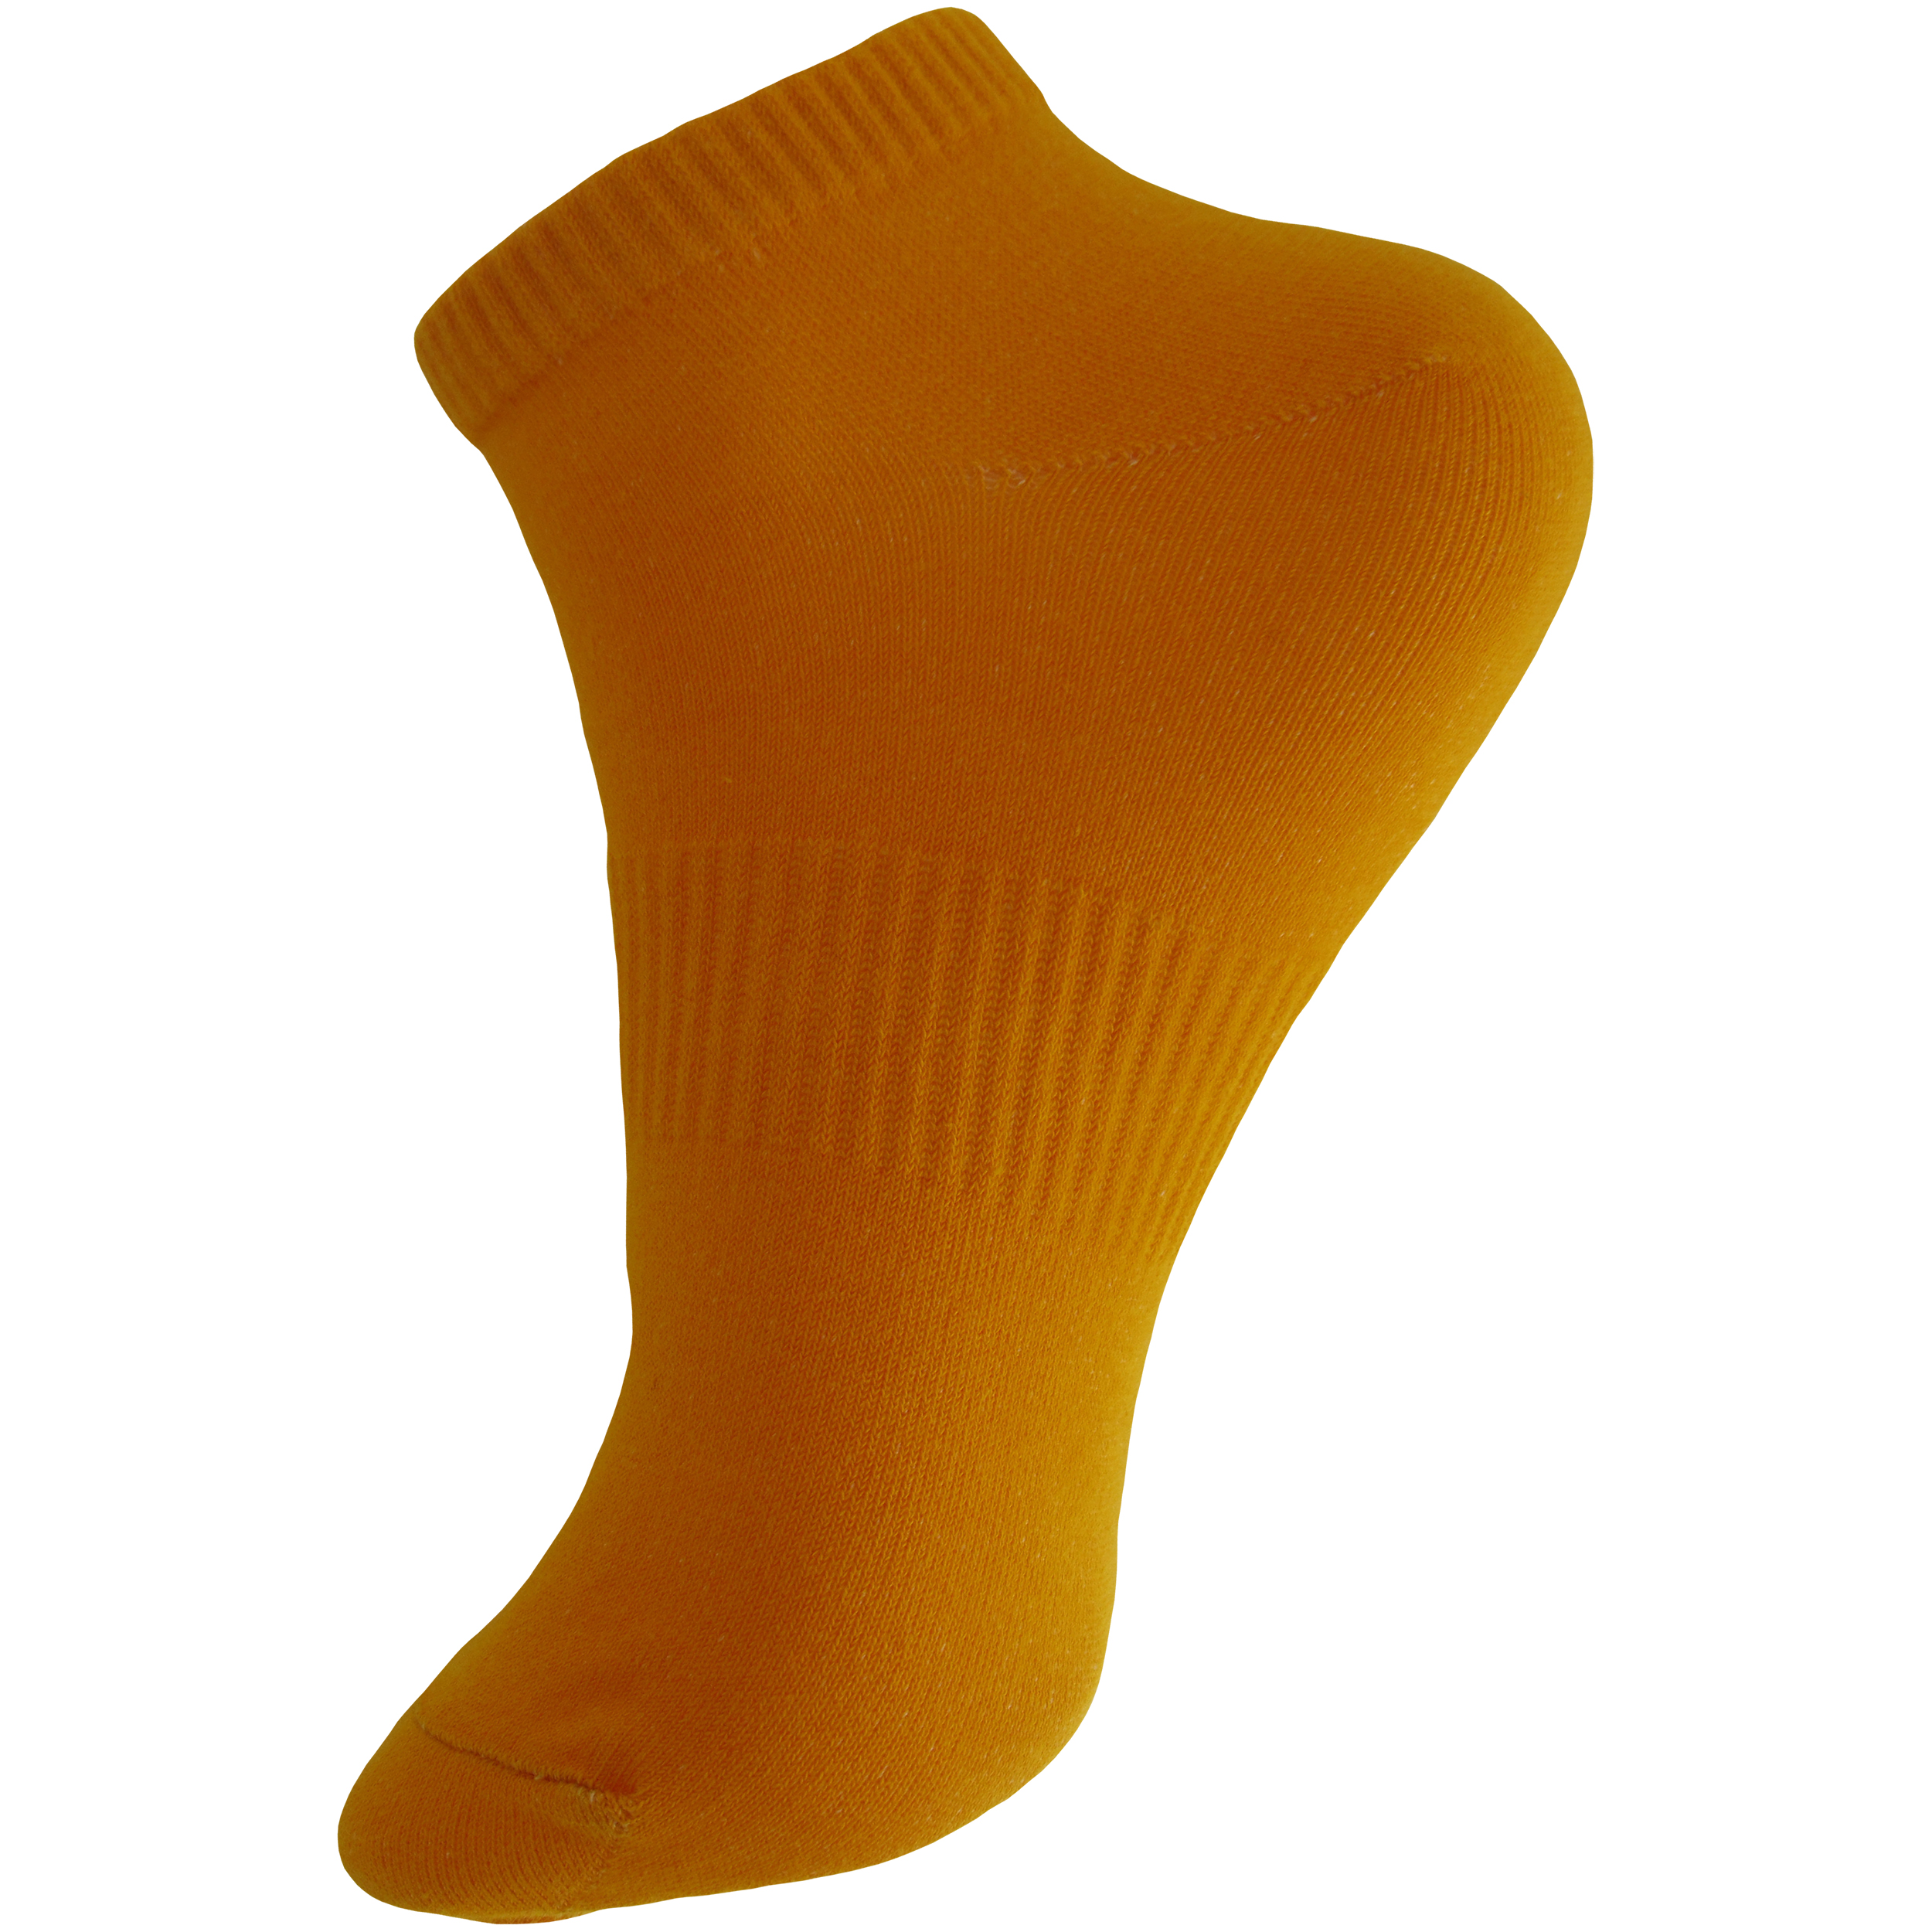 جوراب ورزشی ساق کوتاه مردانه ادیب مدل اسپرت کش انگلیسی کد MNSPT رنگ نارنجی بسته 5 عددی